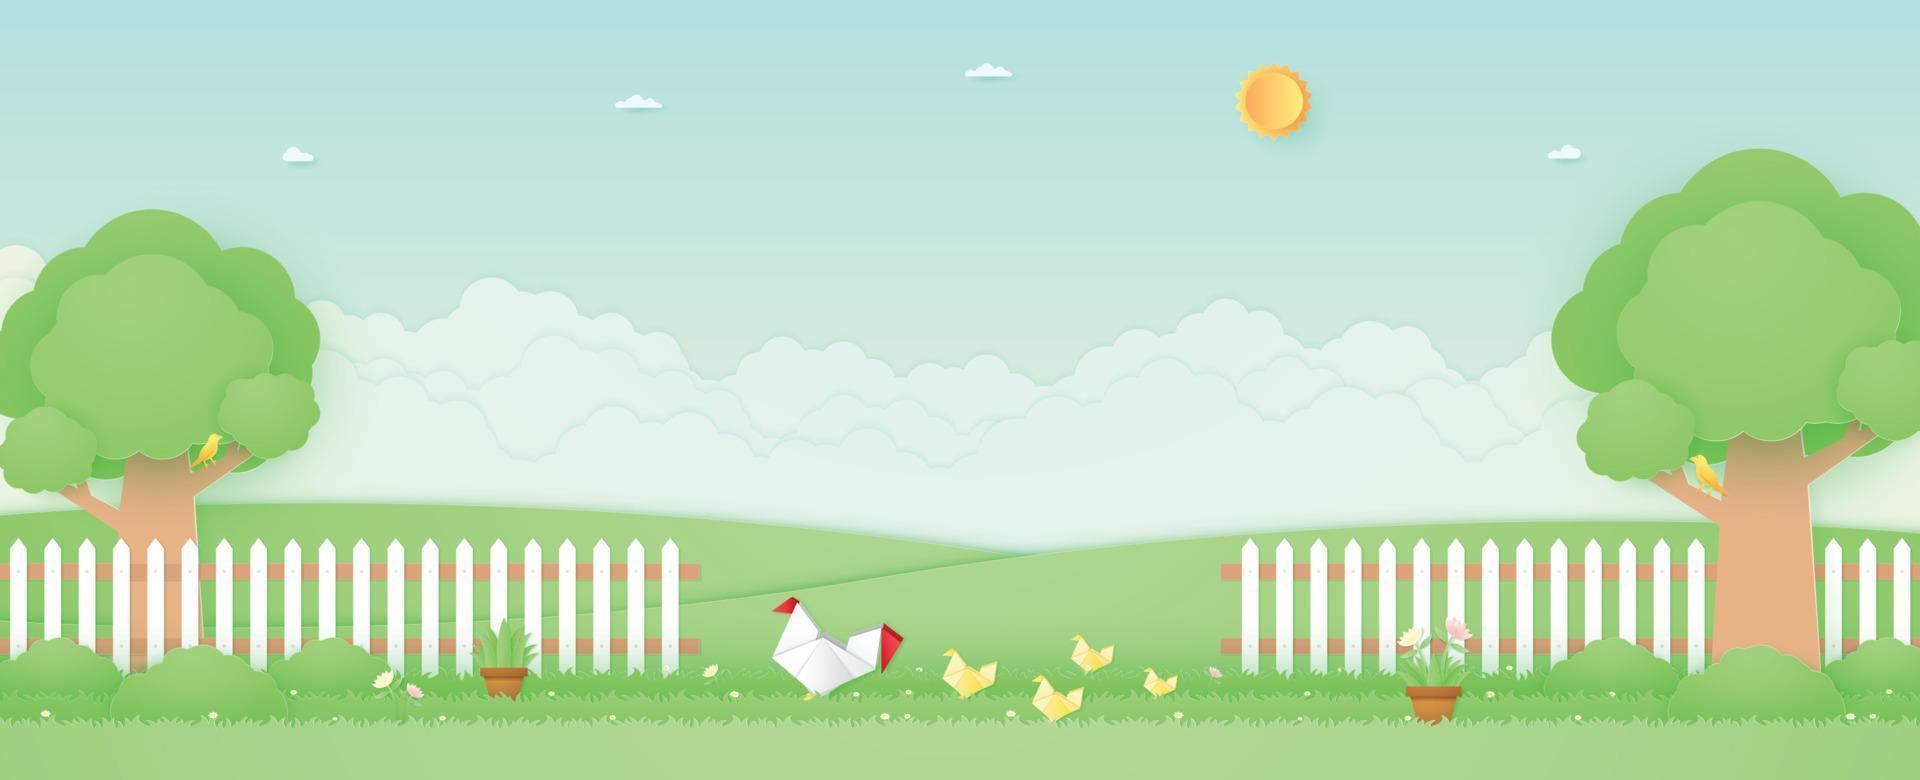 vårtid, landskap, origami -kyckling och kycklingar i trädgården med träd, krukor, vackra blommor på gräs och staket, fågel på grenen, papperskonststil vektor